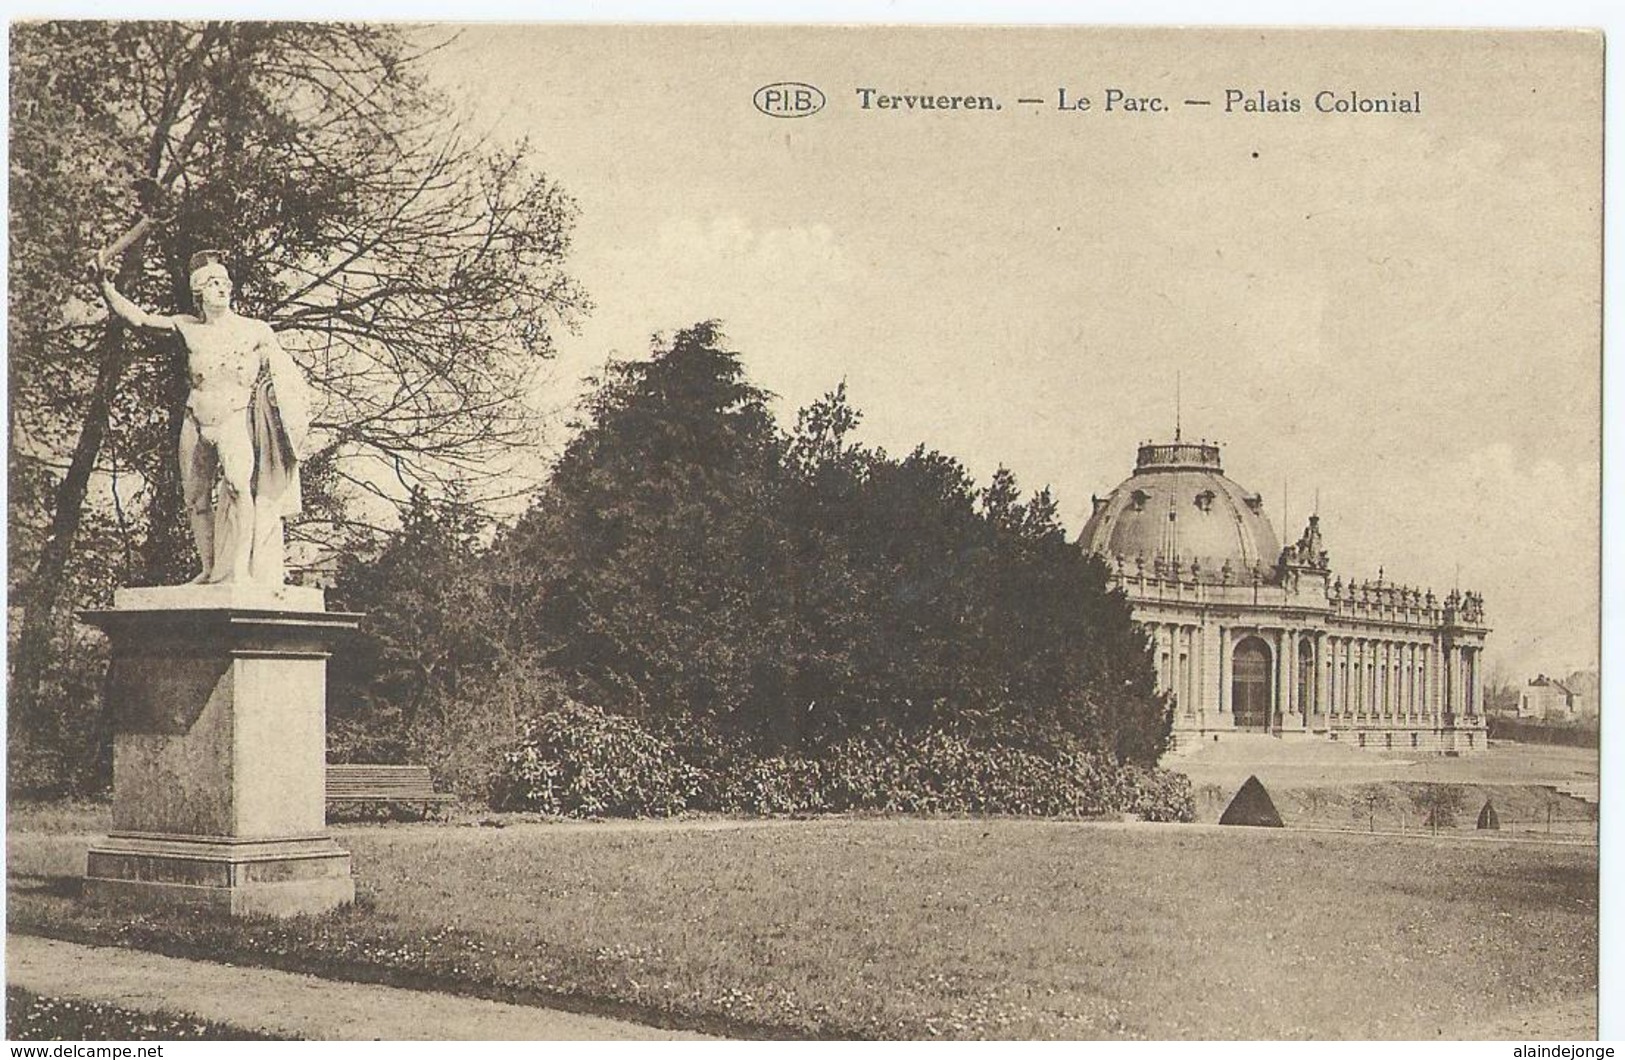 Tervuren - Tervueren - Le Parc - Palais Colonial - P.I.B. - Tervuren